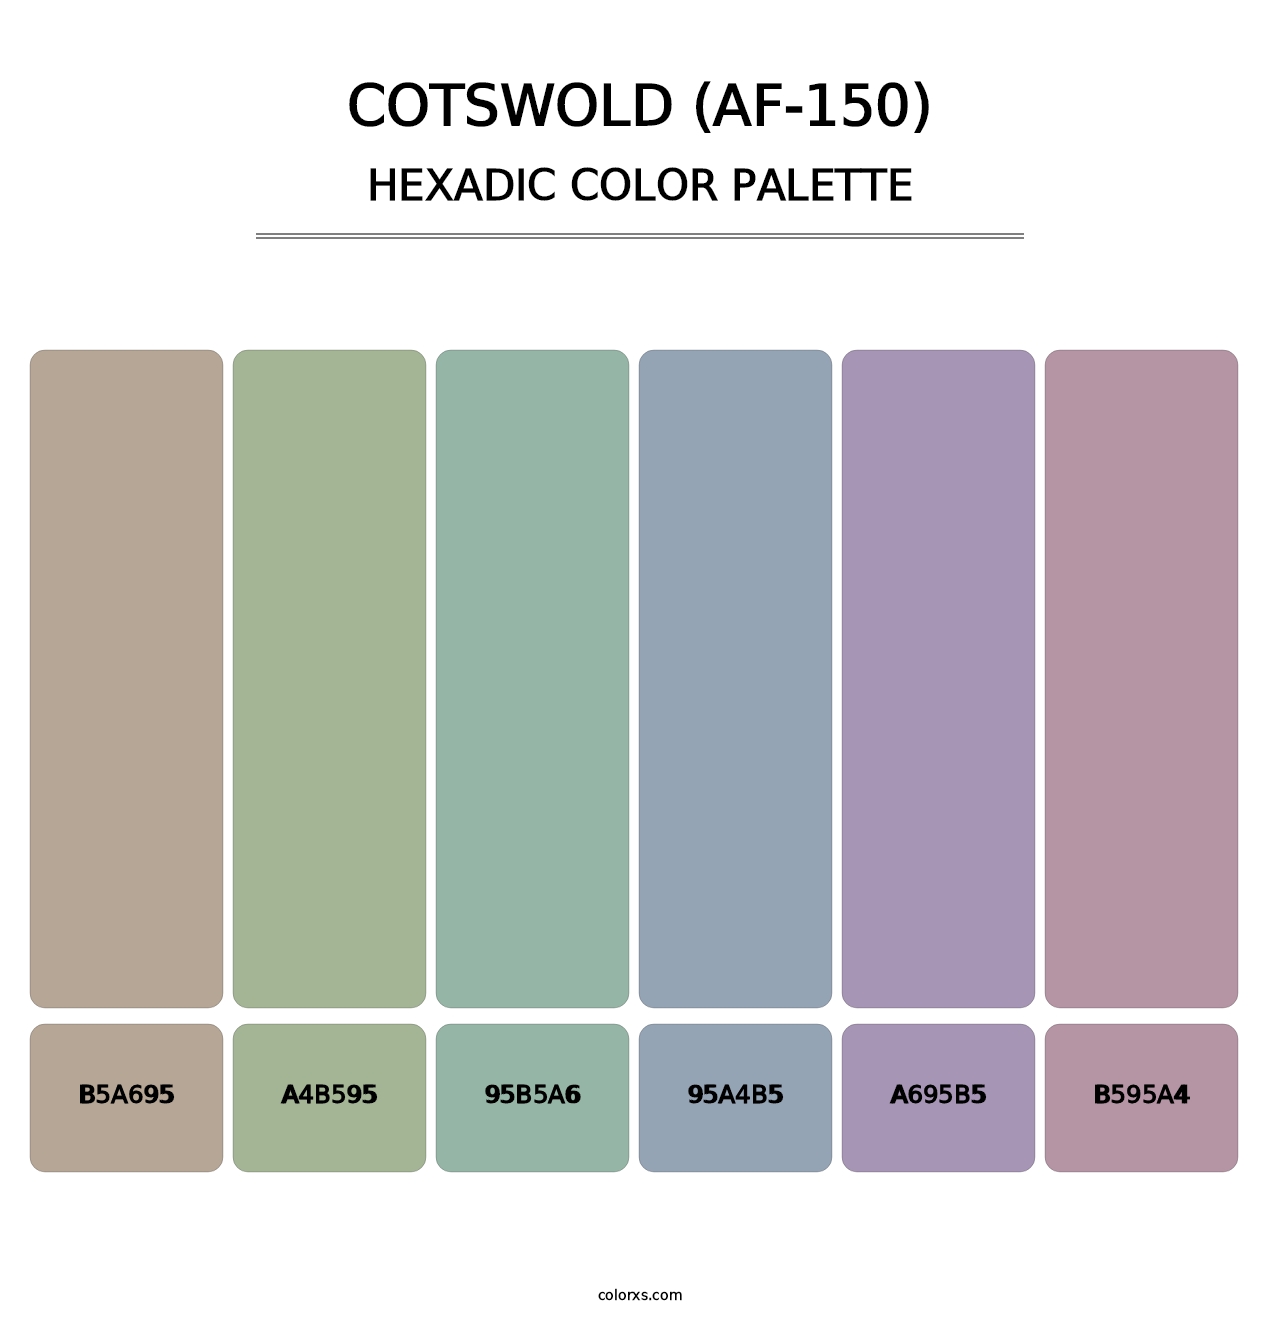 Cotswold (AF-150) - Hexadic Color Palette